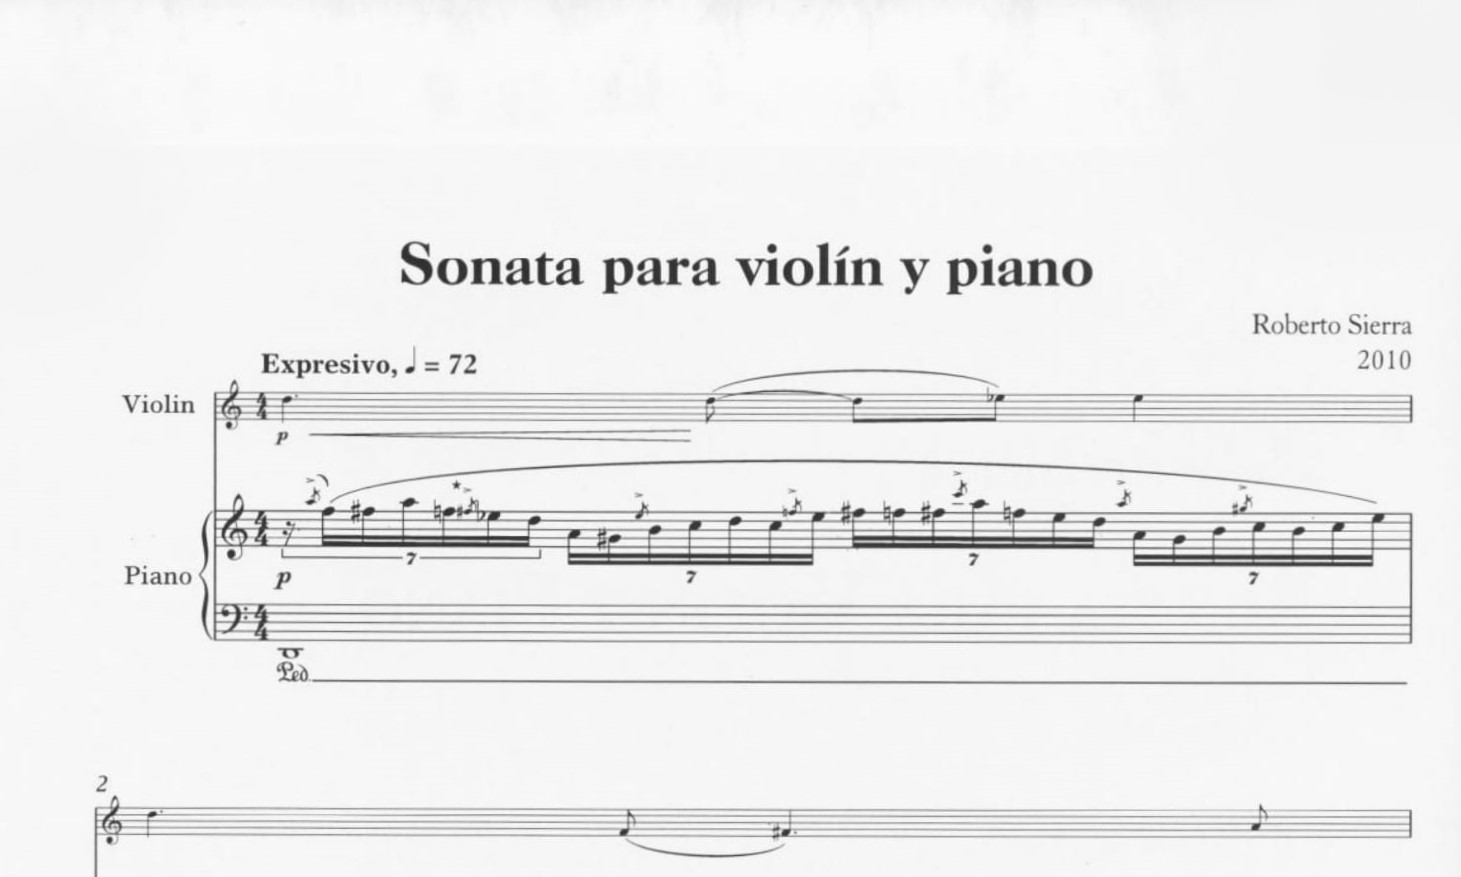 Sonata para violín y piano